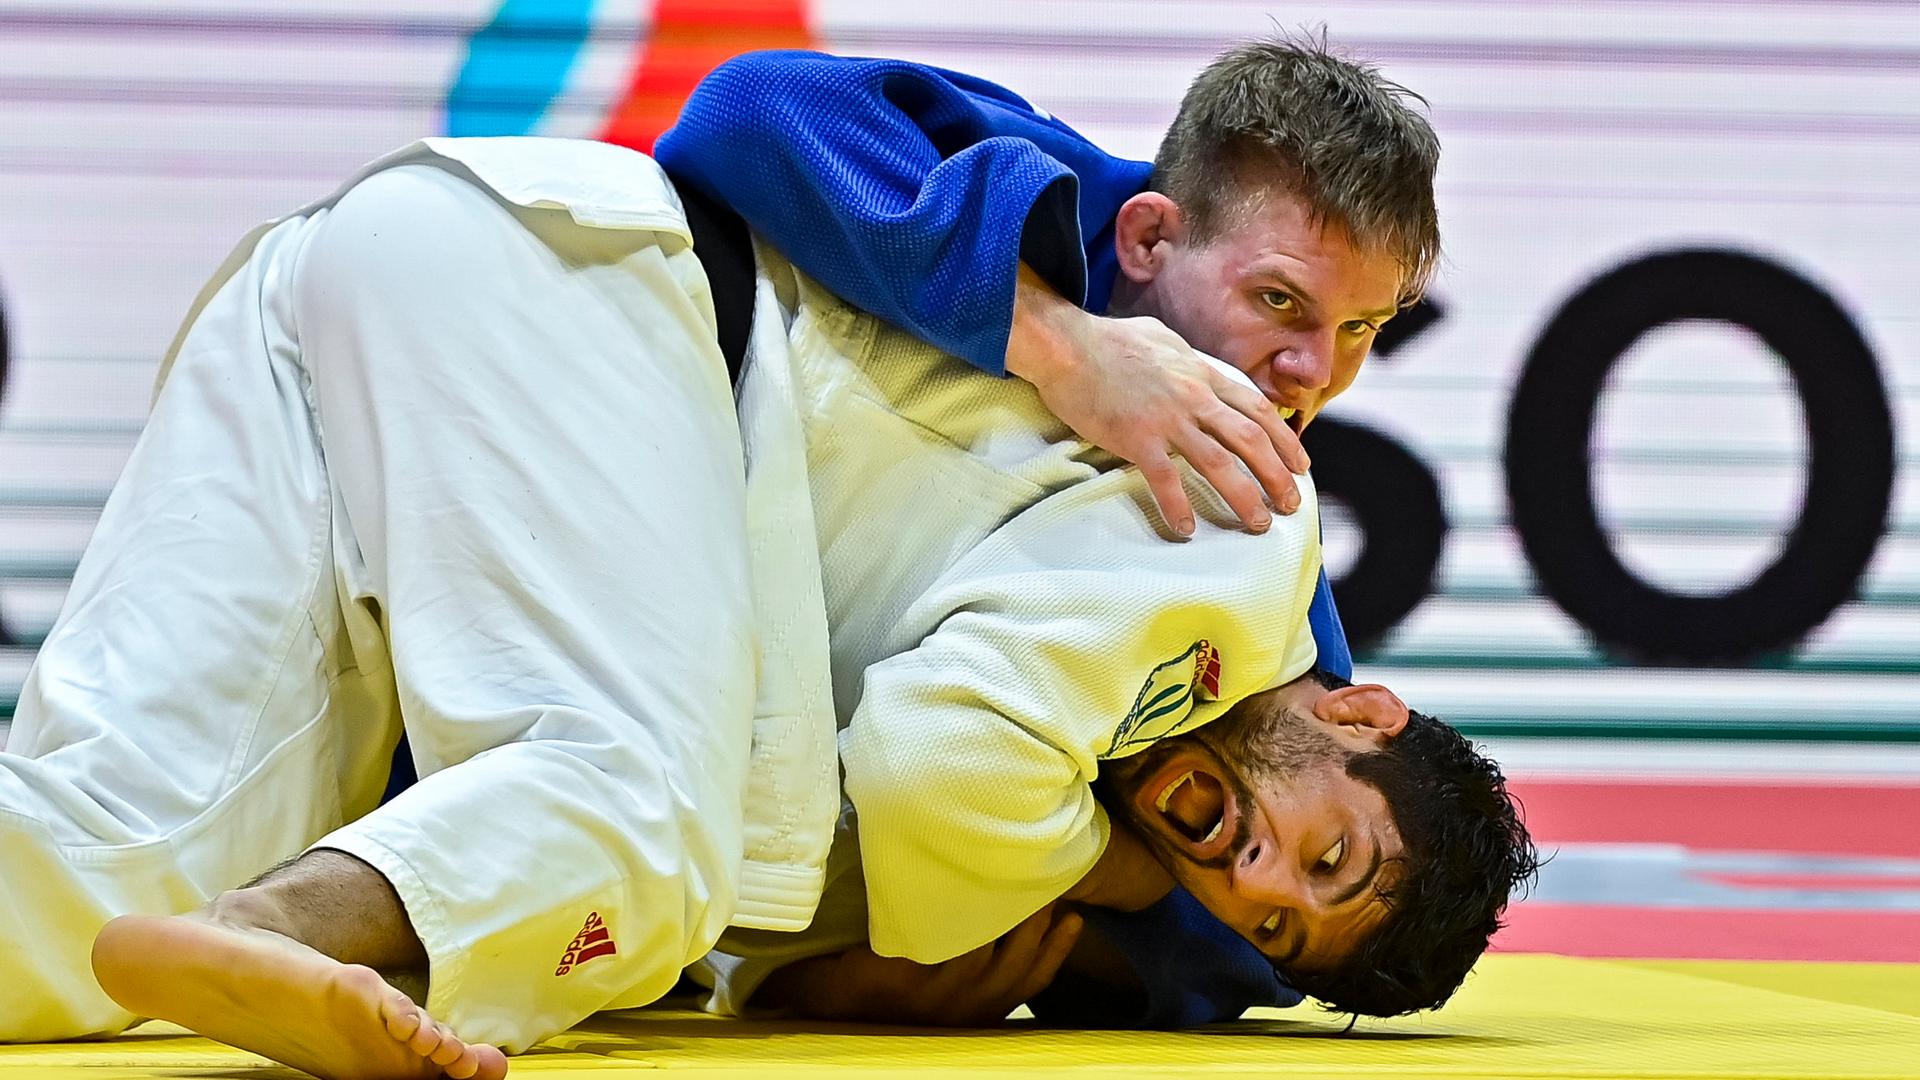 Der deutsche Judoka Alexander Gabler (im blauen Anzug) kämpft gegen den georgischen Judoka Lasha Shavdatuashvili bei der WM in Doha. 